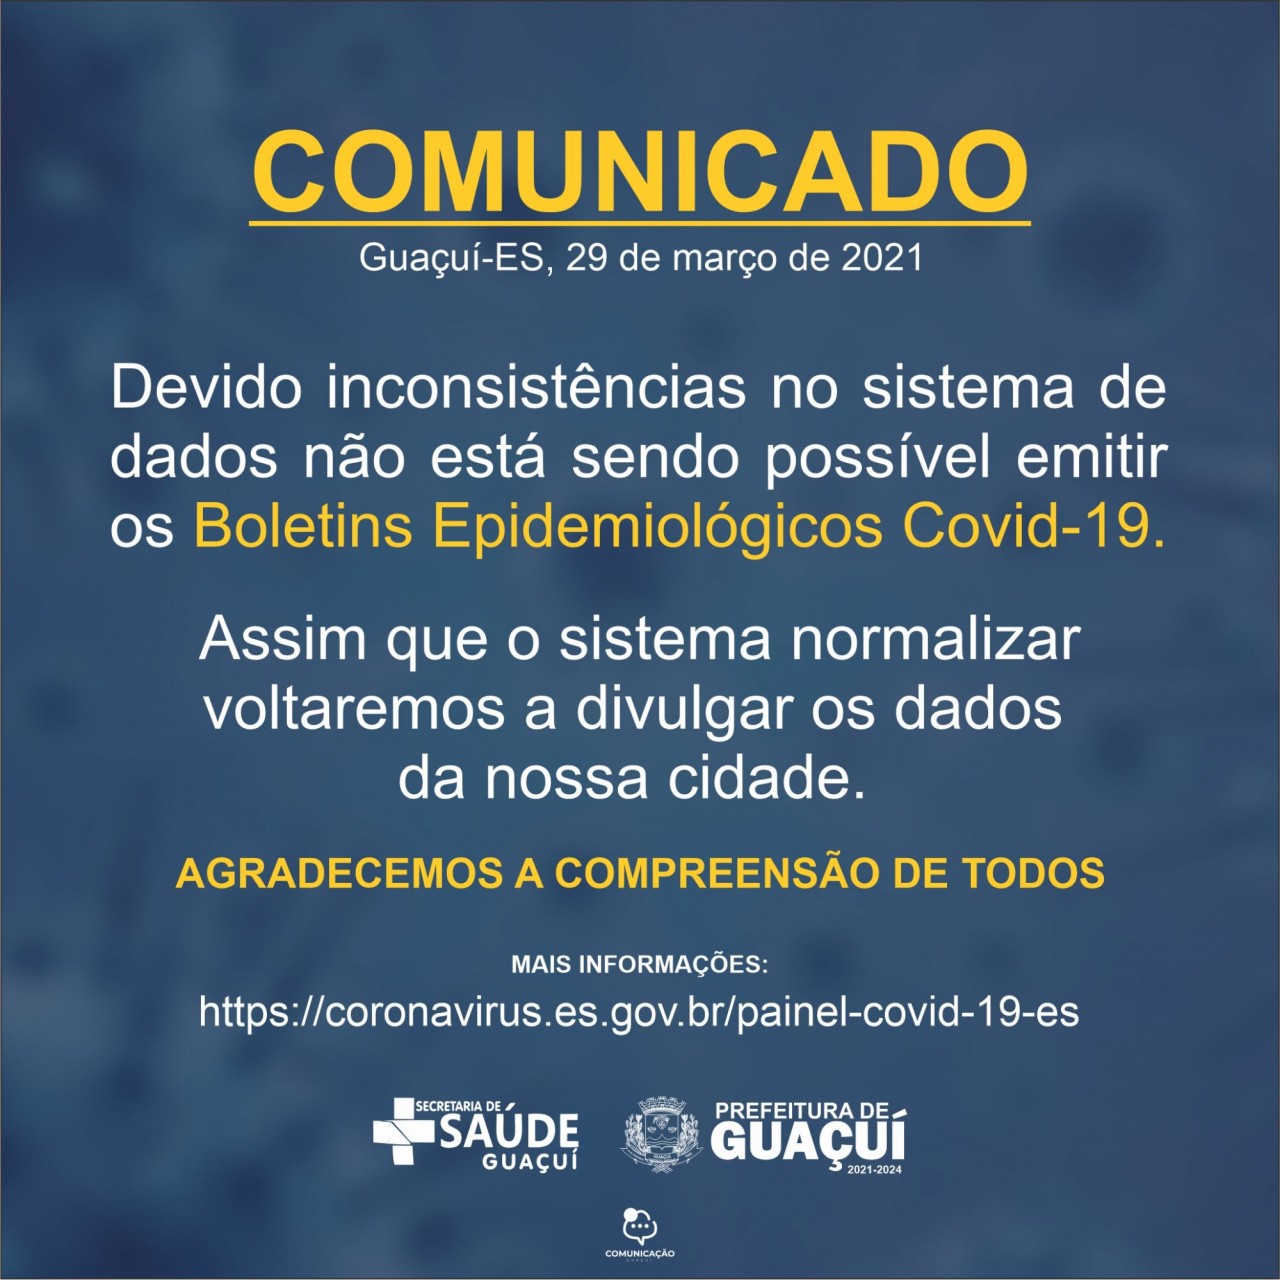 COMUNICADO - Guaçuí-ES, 29 de março de 2021